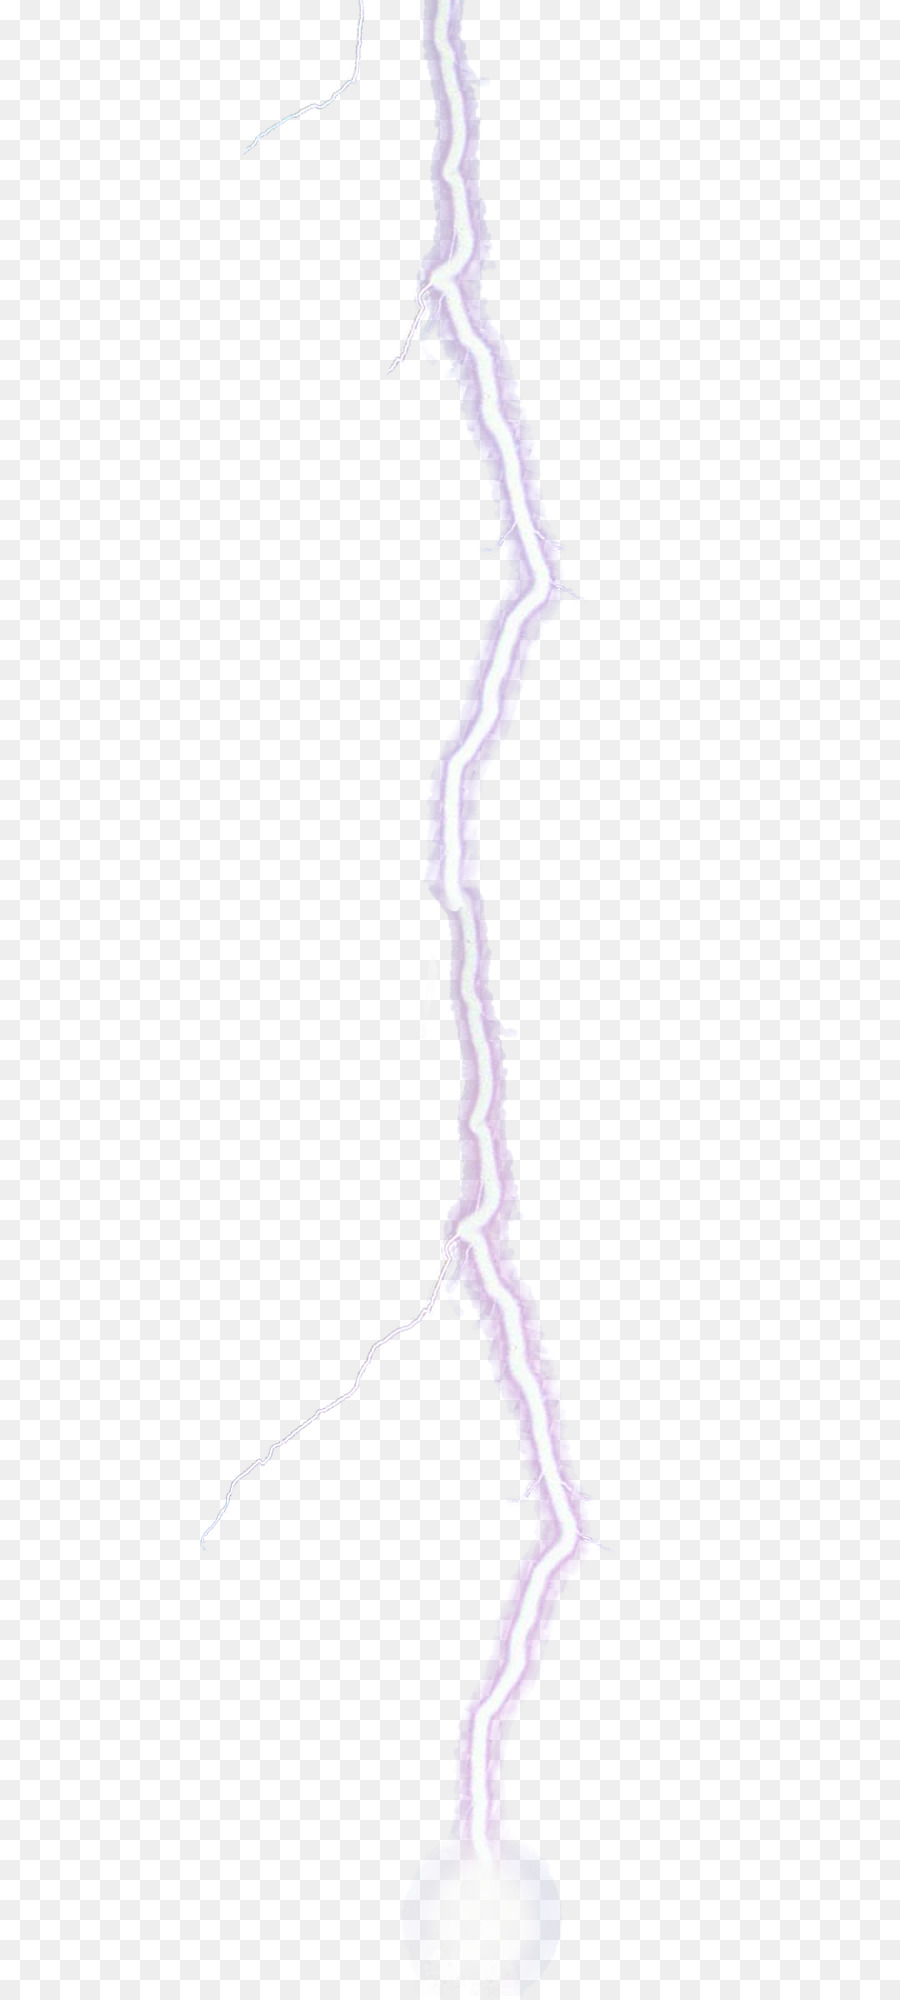 Abbildung Zeichnung Lila Violett Lavendel - Beleuchtung